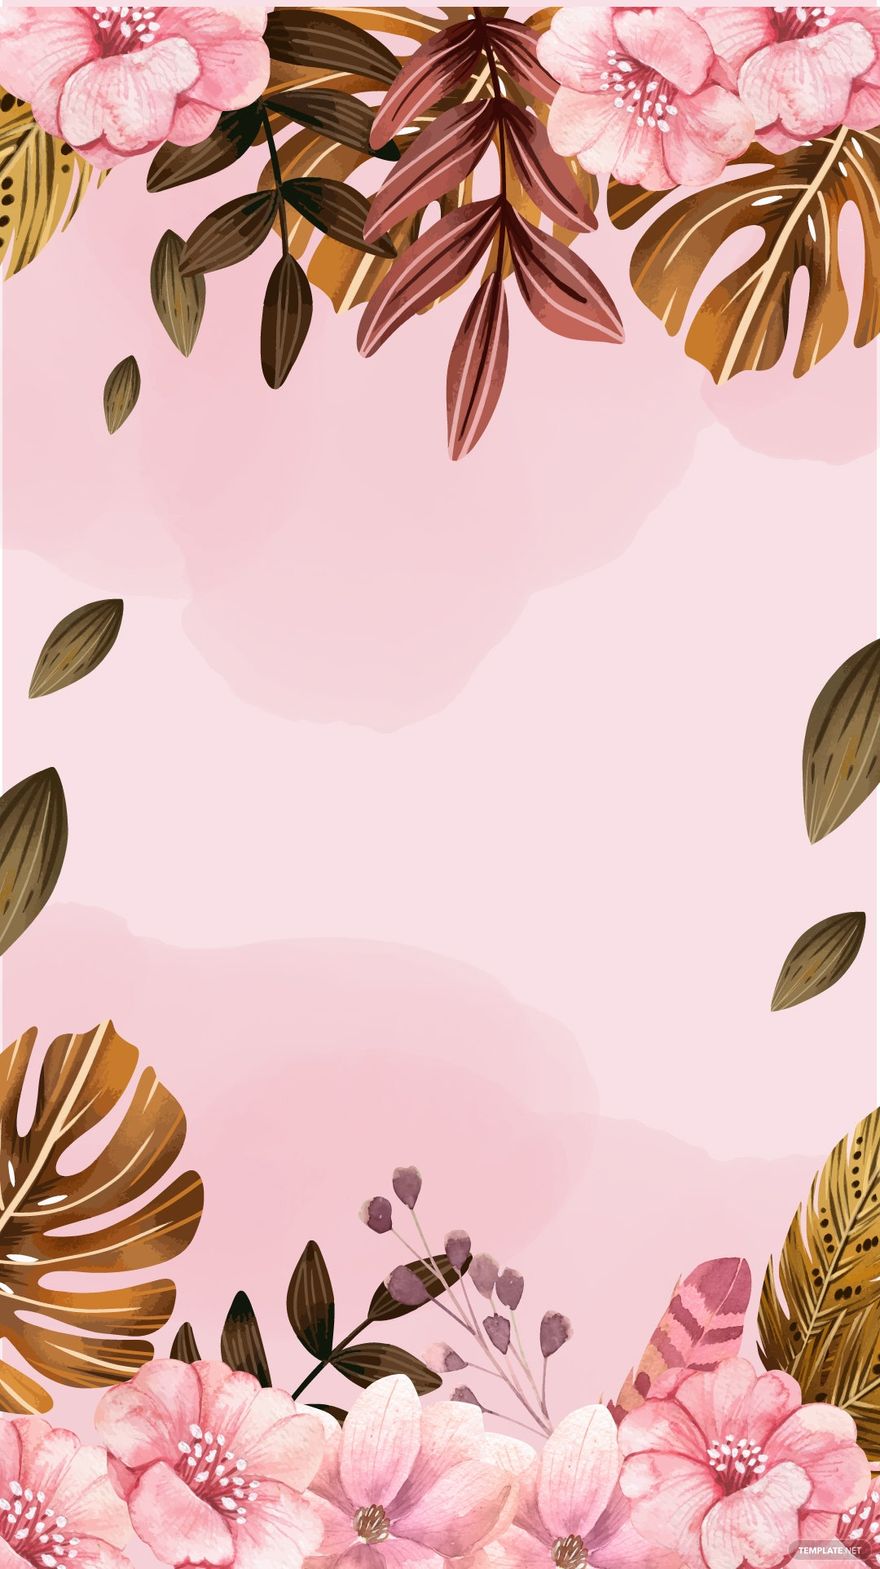 Colorful Boho Floral Background in Illustrator, EPS, SVG, JPG